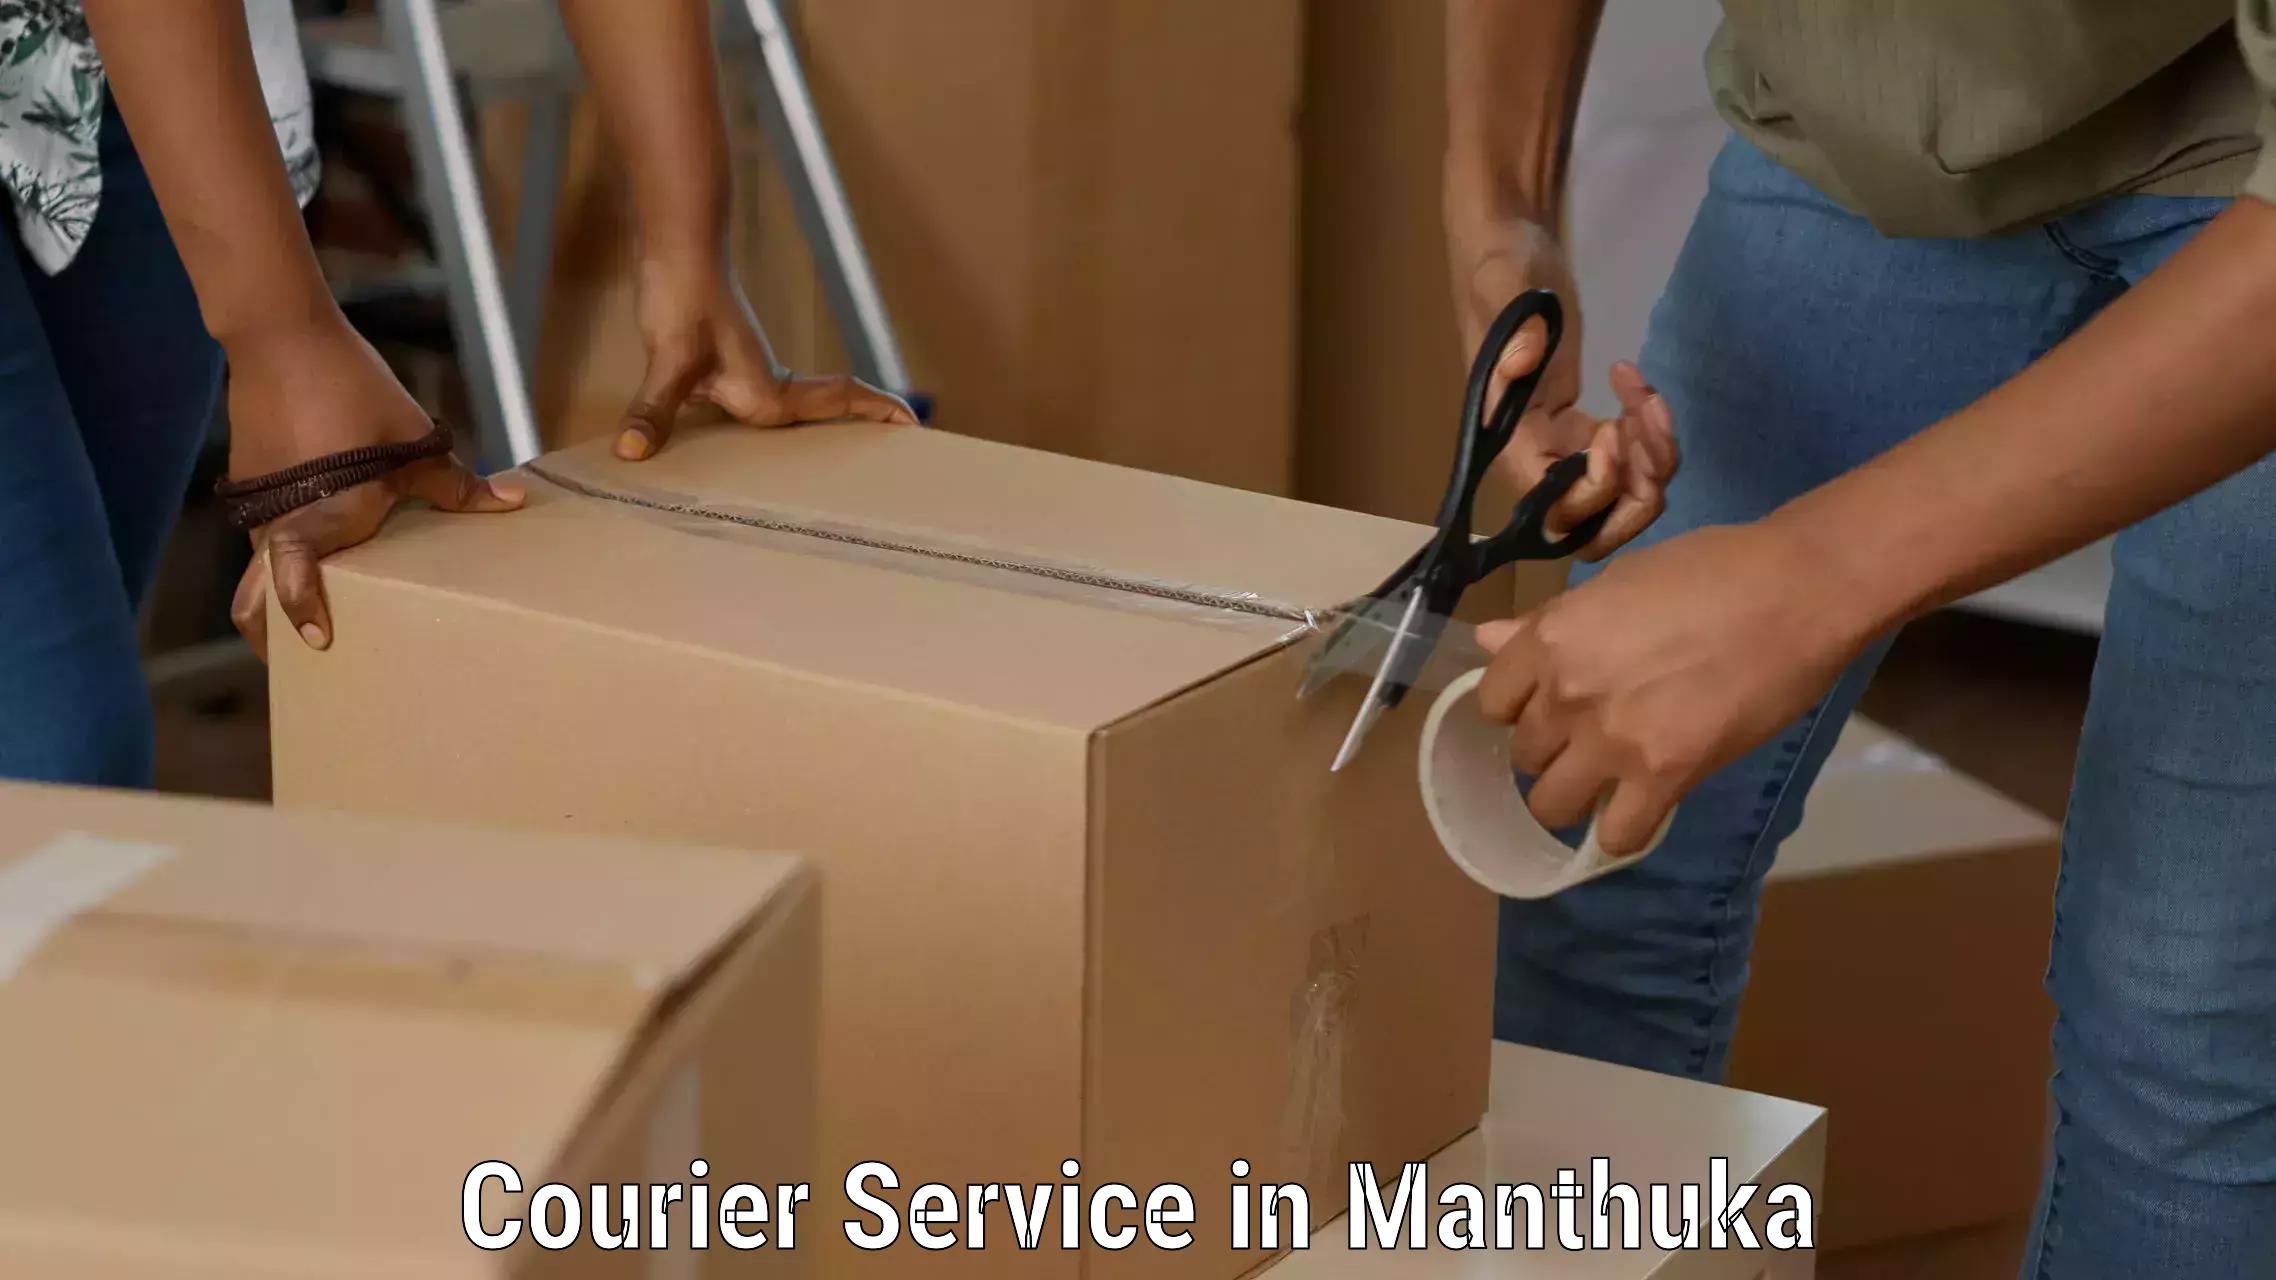 Efficient cargo services in Manthuka